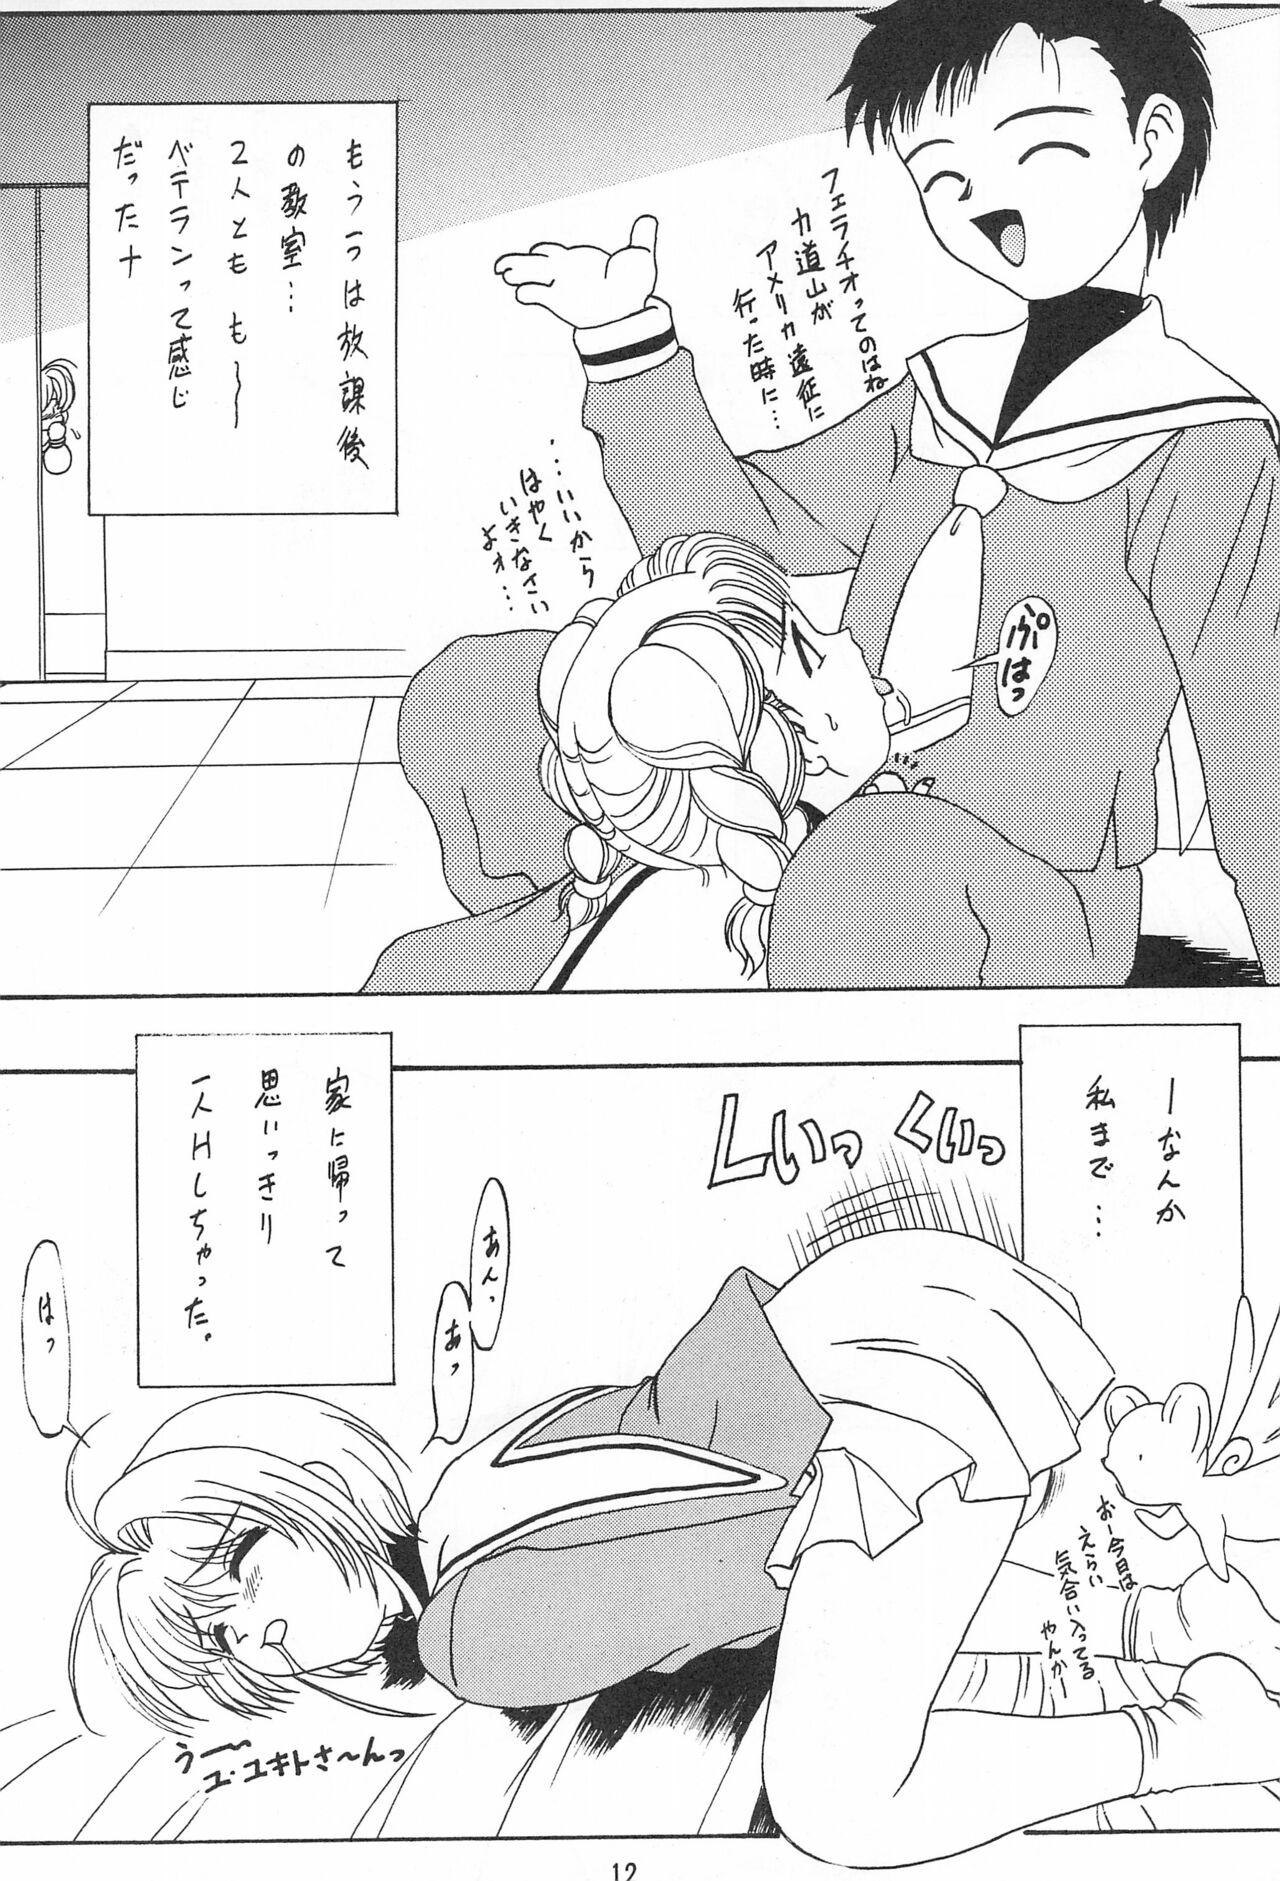 Uniform Gio VI Jaten - Cardcaptor sakura Whore - Page 12